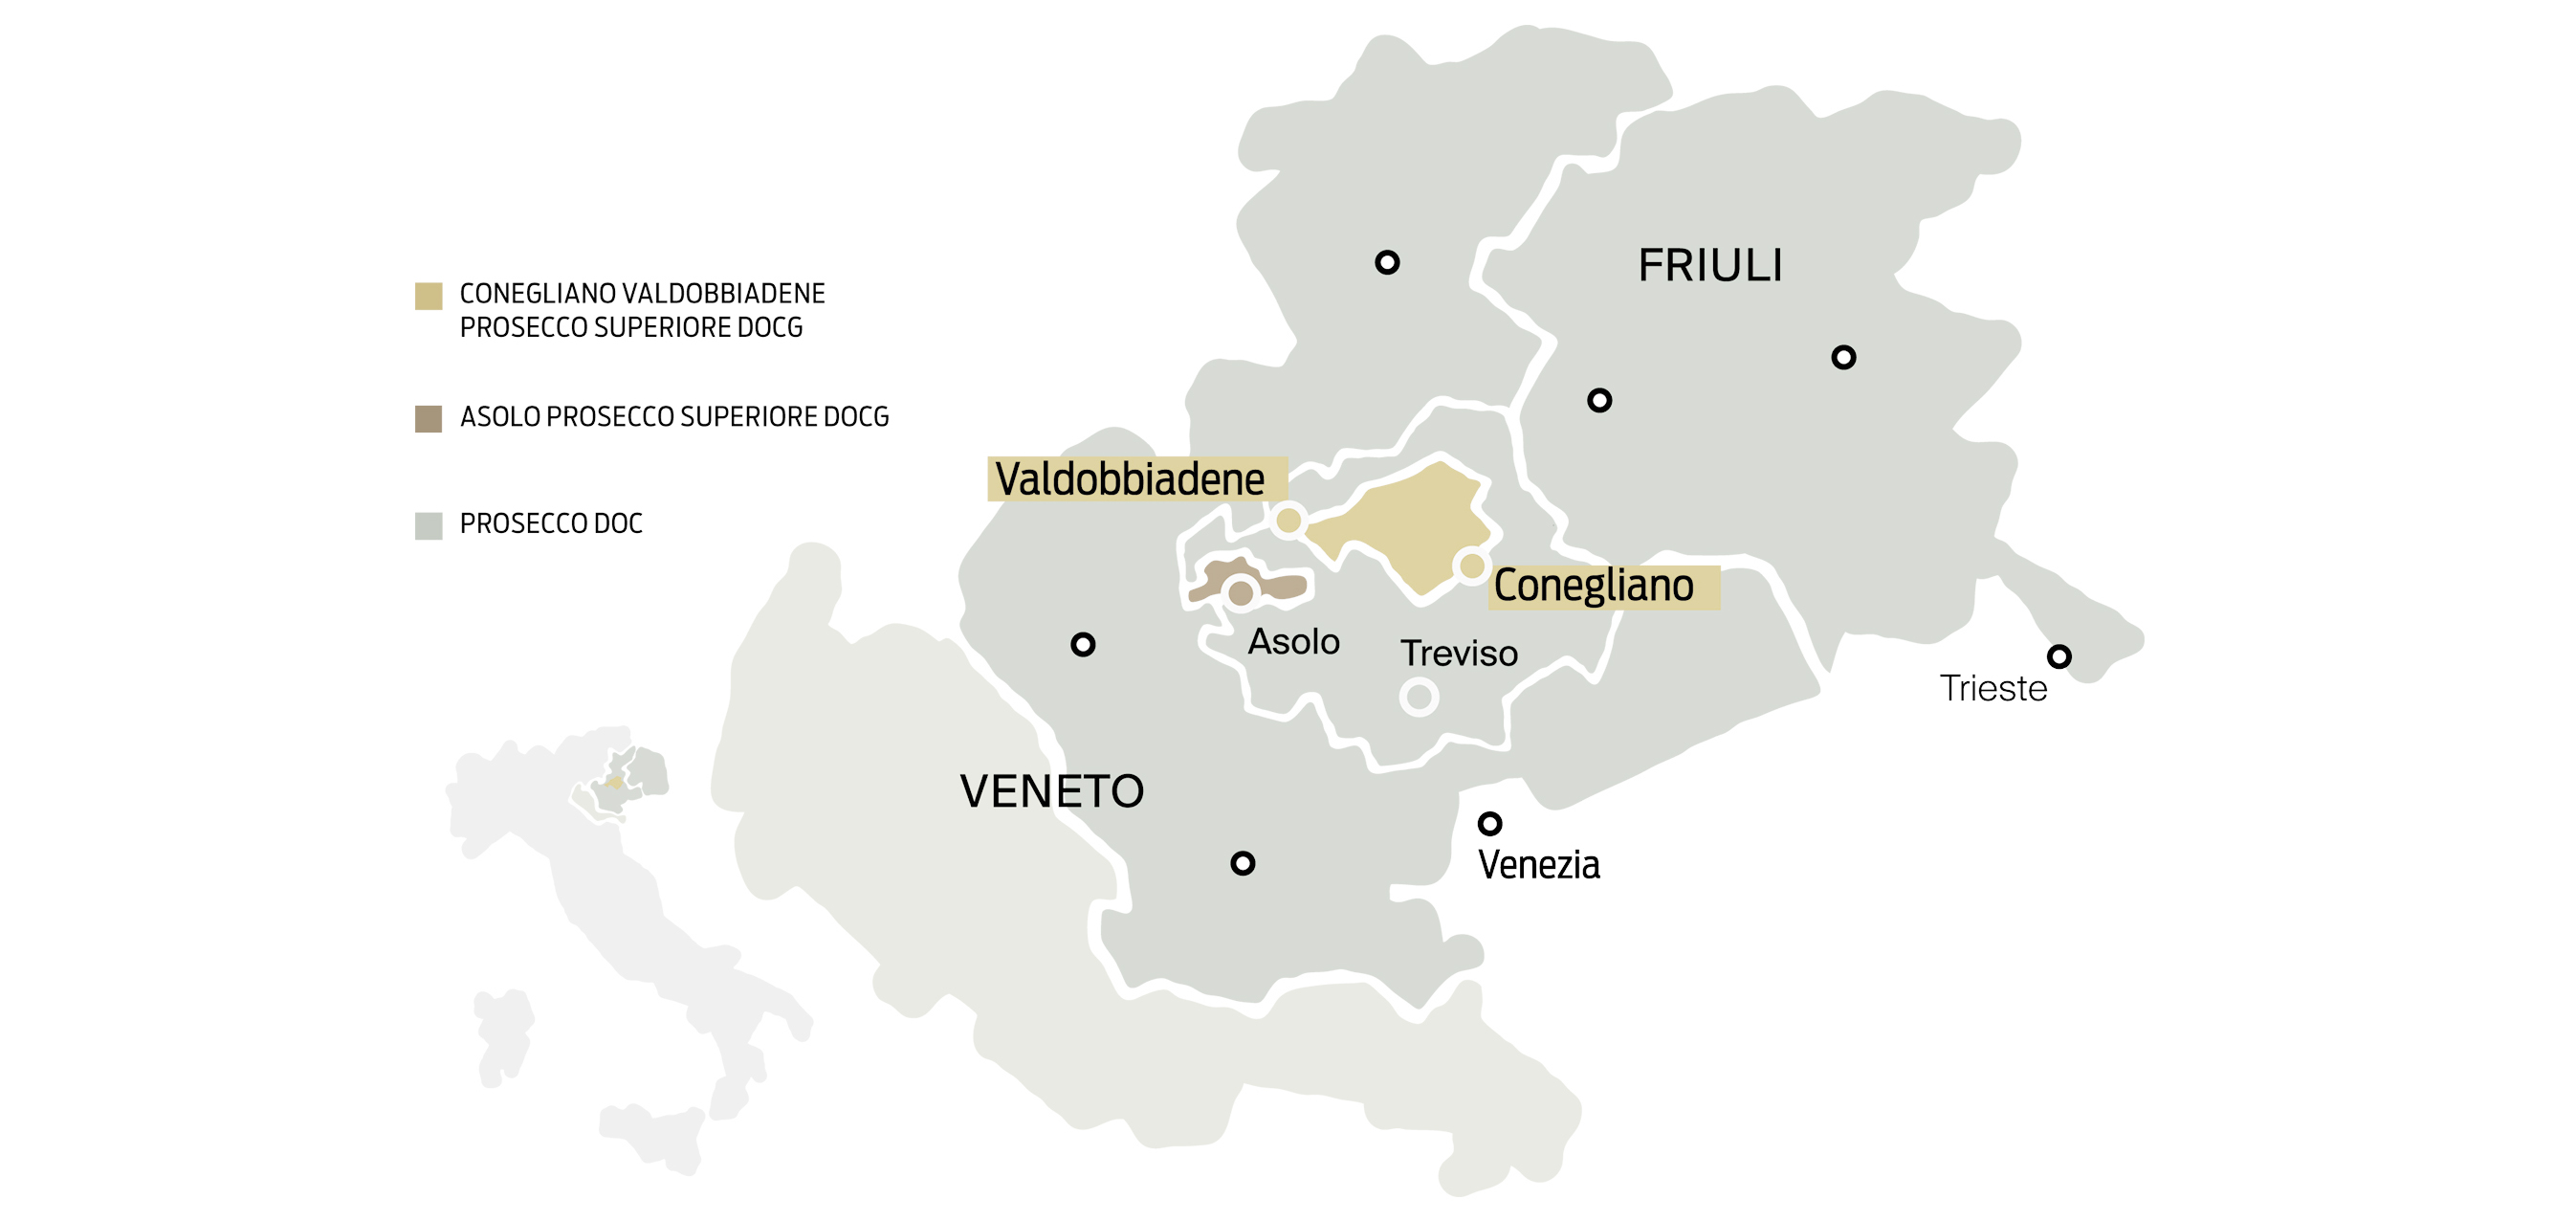 Prosecco_Superiore_Map_Conegliano_Valdobbiandene_Credit_Consorzio_Di_Tutela_Del_Vino_Conegliano_Valdobbiadene_Prosecco_1920x1280_2